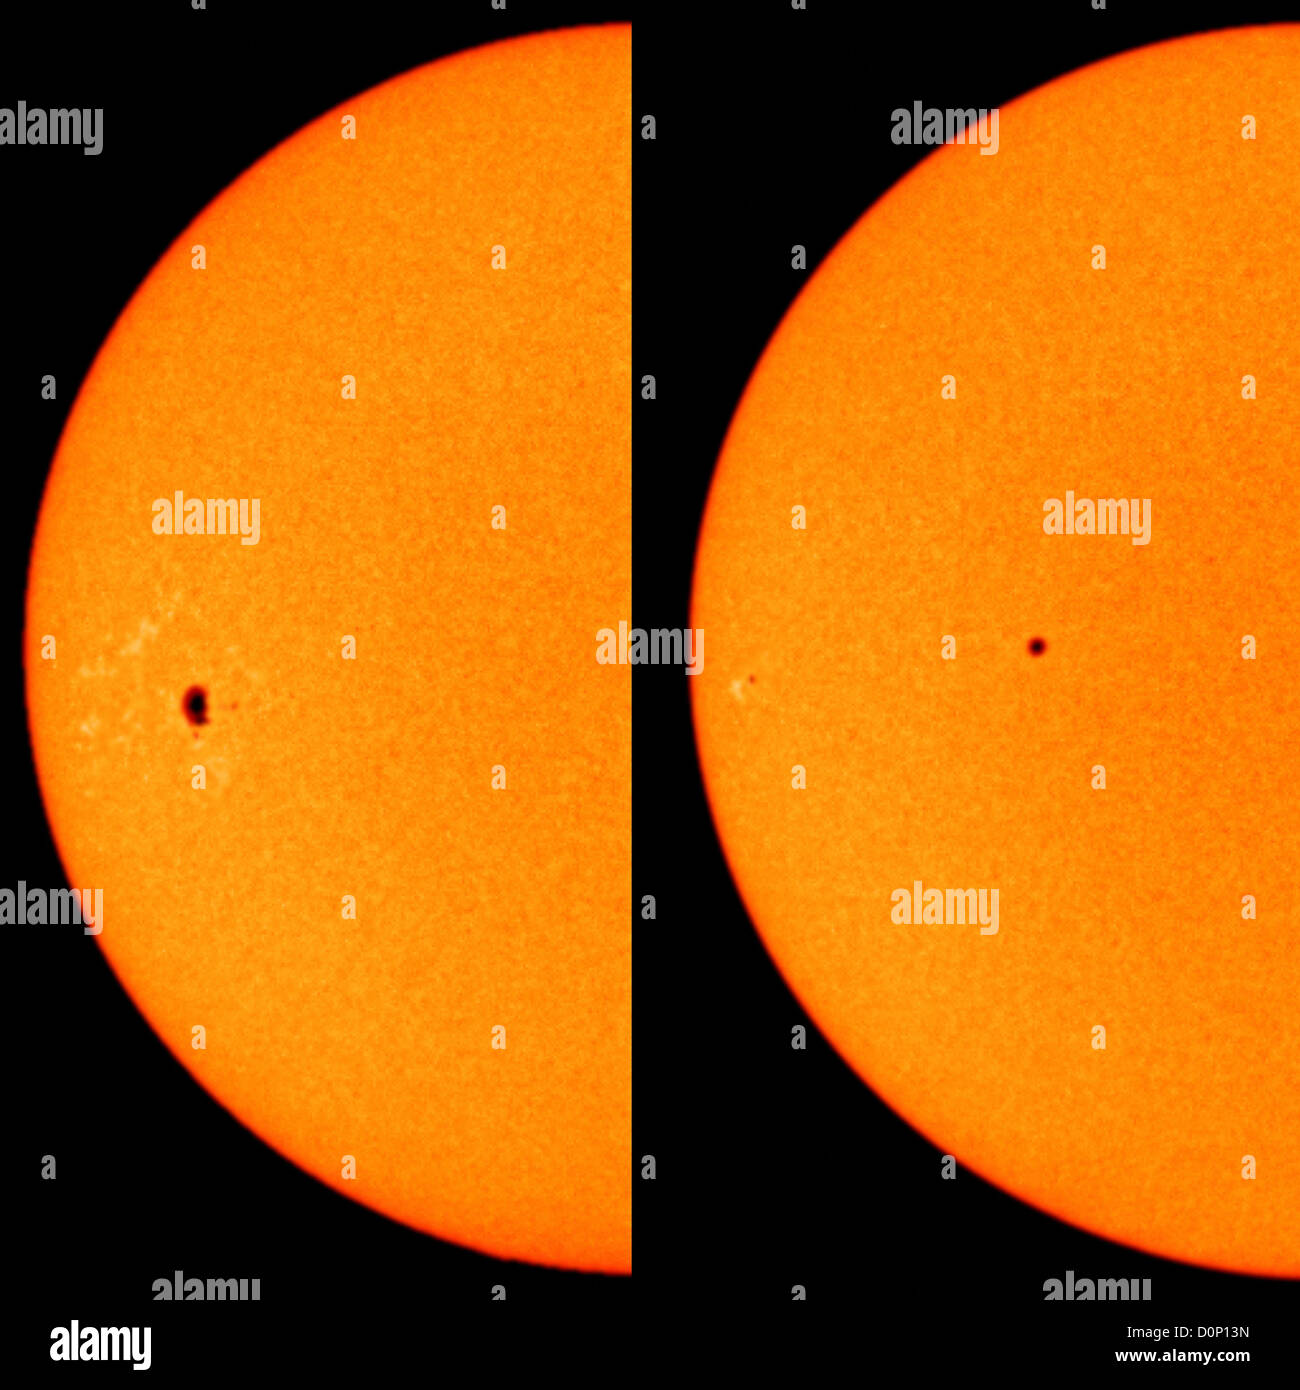 Ein Sonnenfleck dauerte in der Regel langen Zeit Dezember 2006 (links), Februar 2007 (rechts). Früher war es starke Sonneneruption Website. Stockfoto